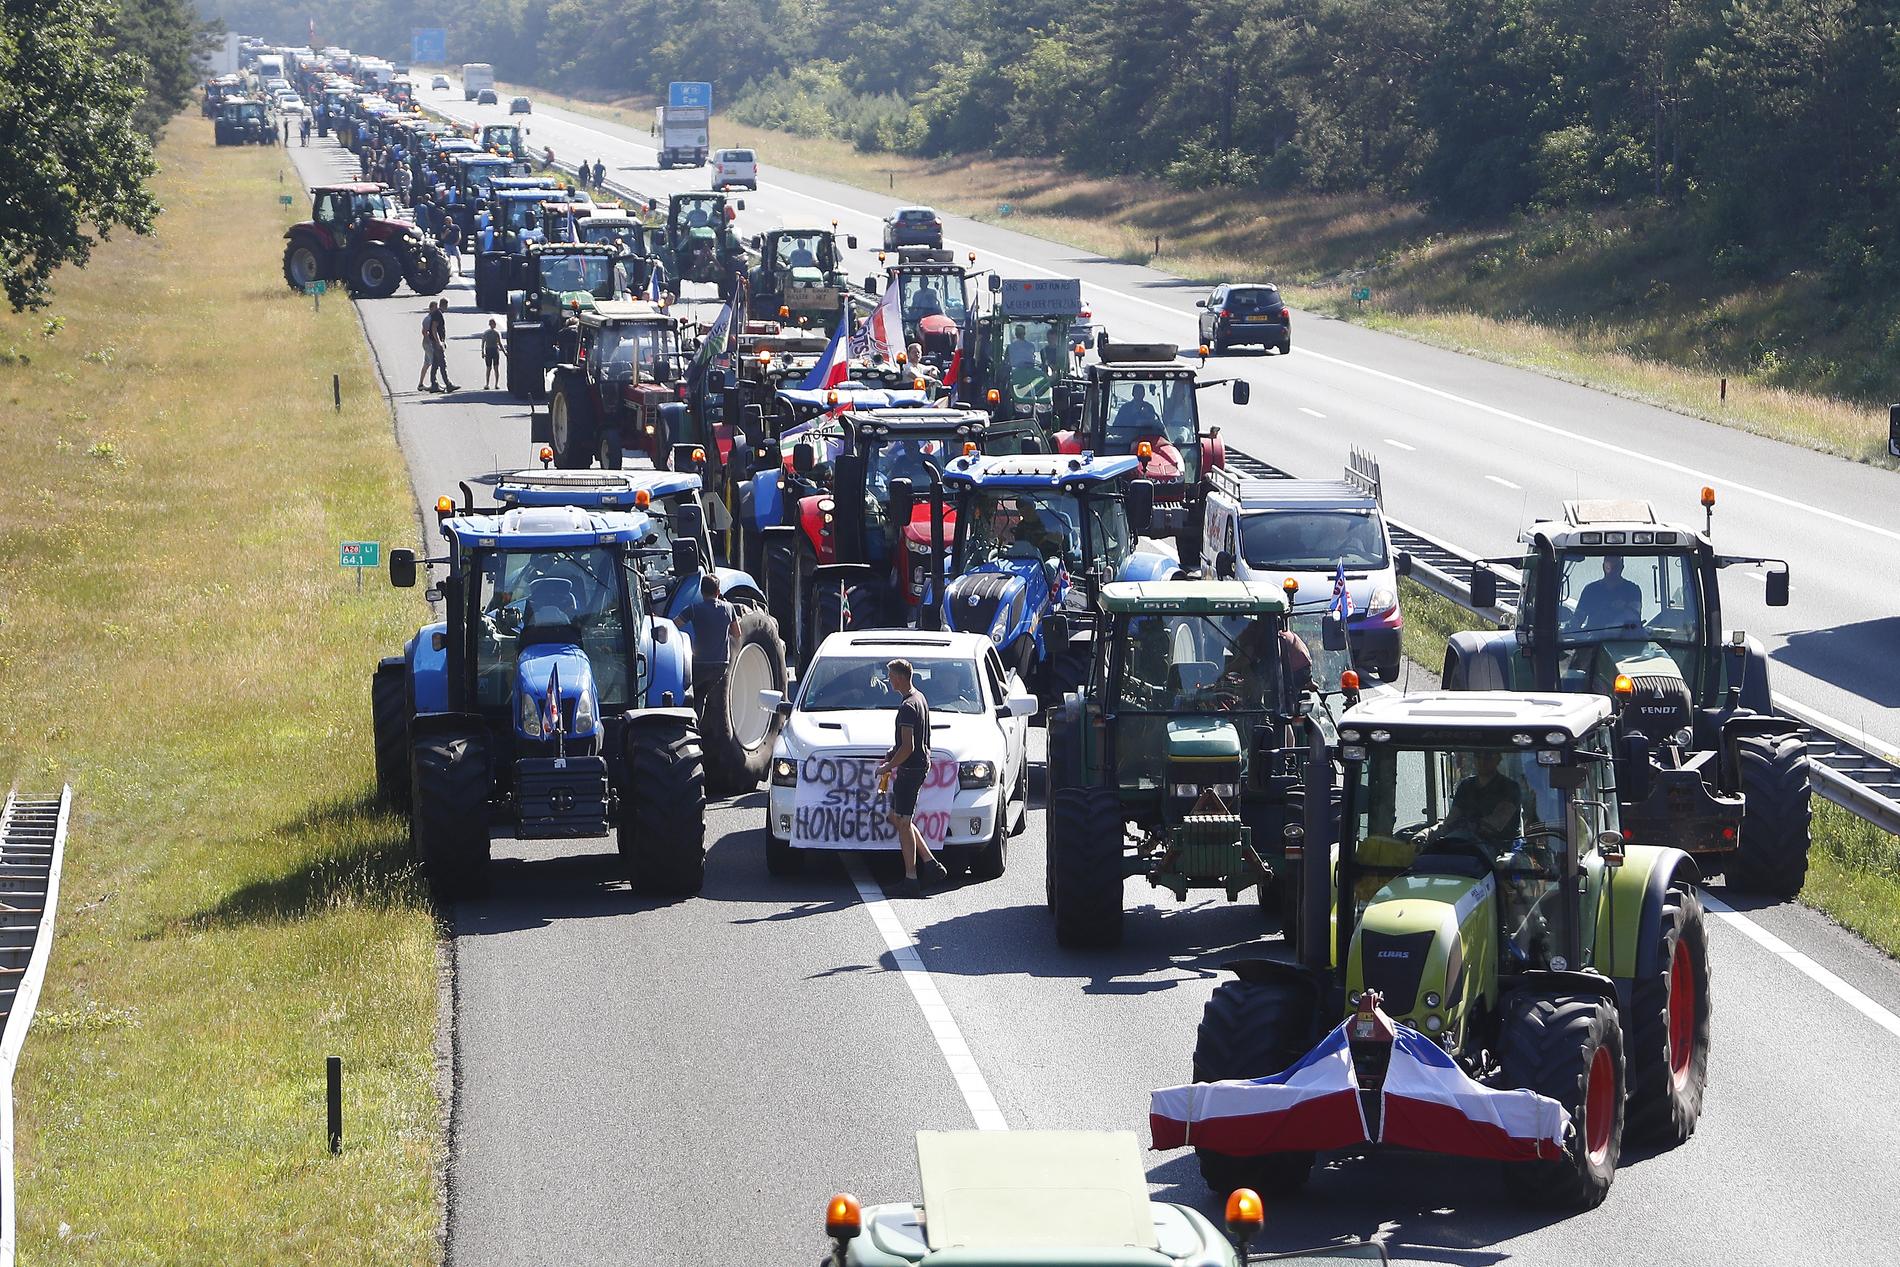 Tourné contre une manifestation paysanne aux Pays-Bas – VG